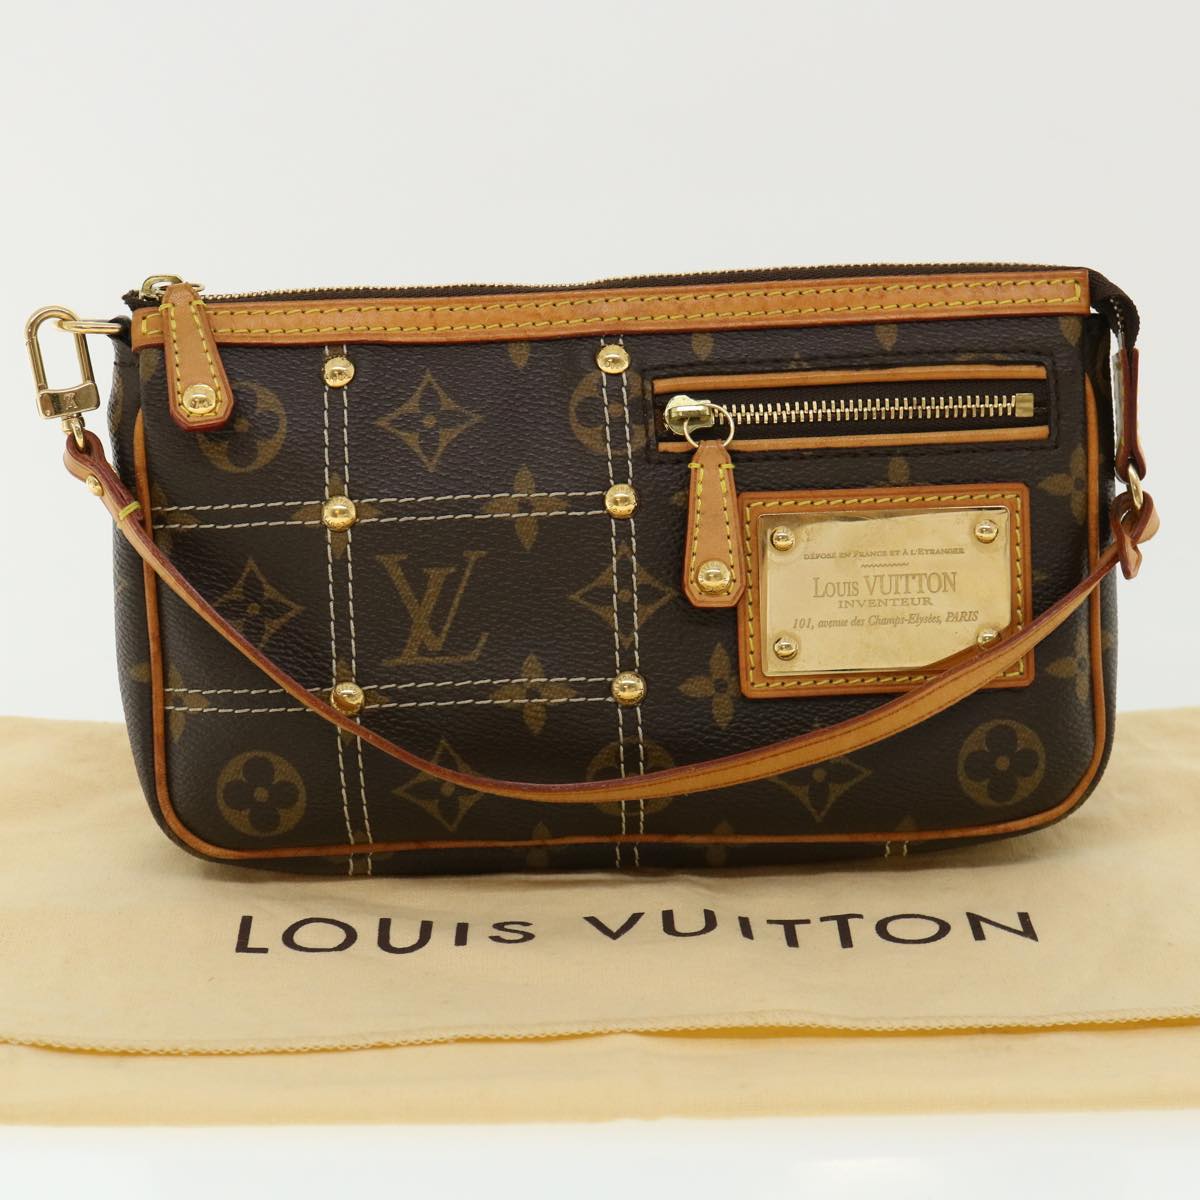  Louis Vuitton M40141 Rivet Pochette Monogram Access